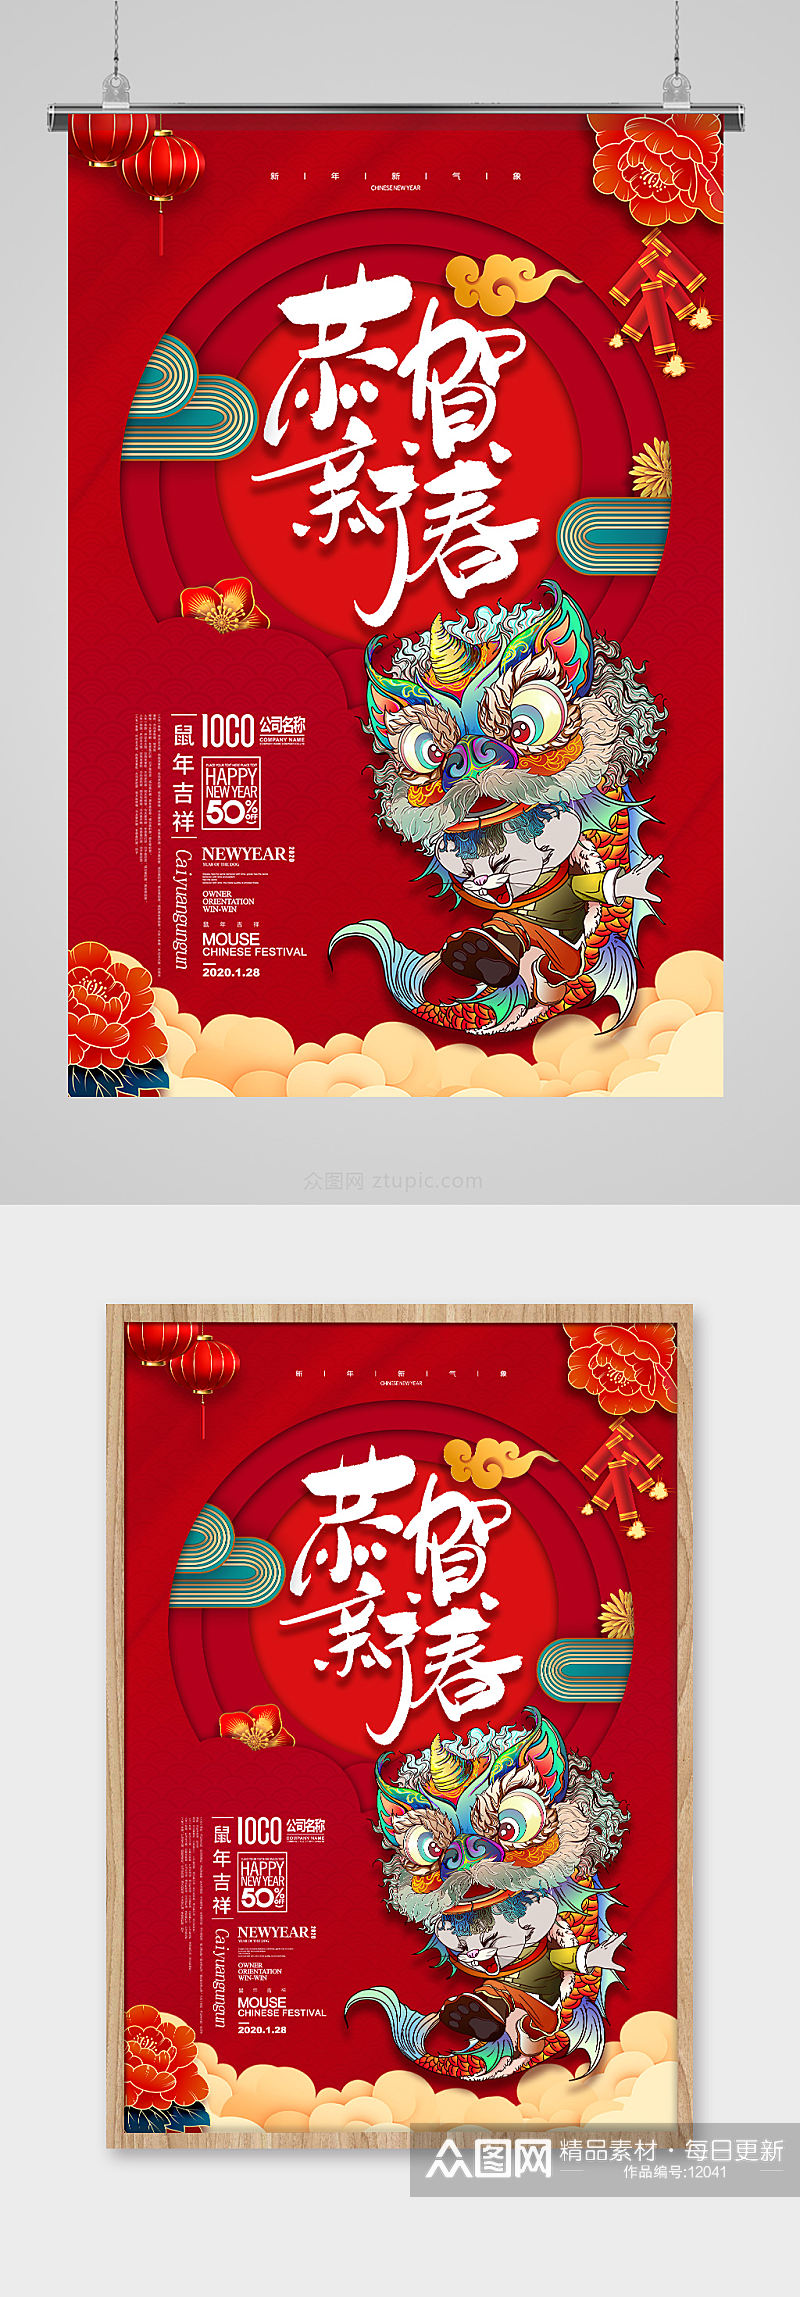 鼠年春节海报素材